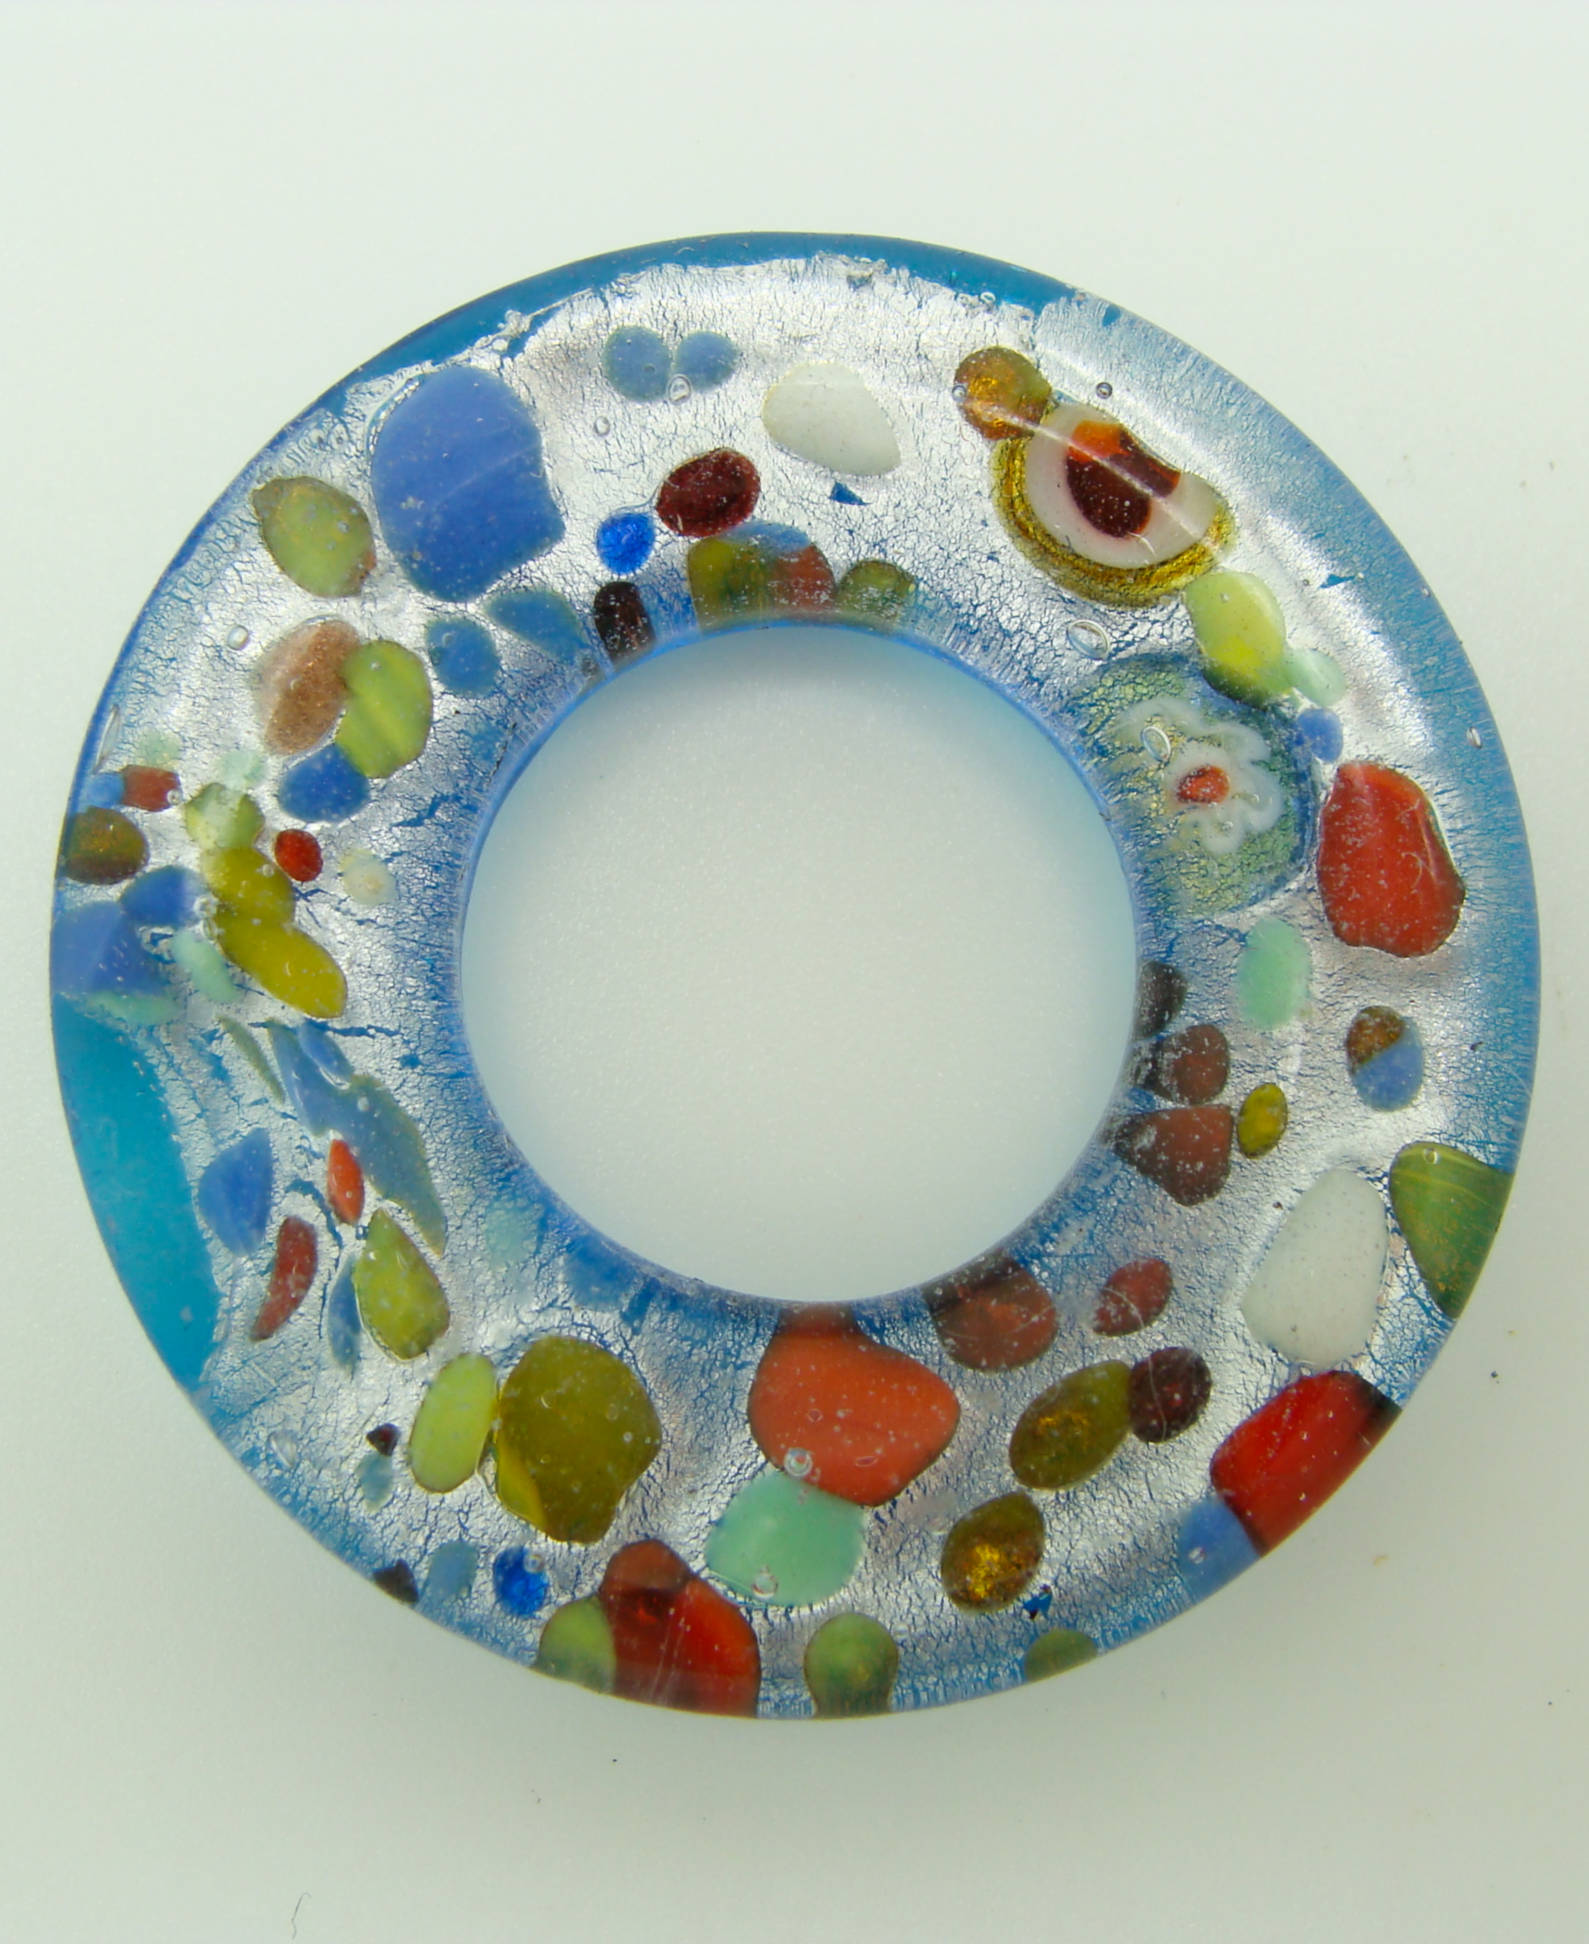 Pend-290-1 pendentif donut bleu argente rond